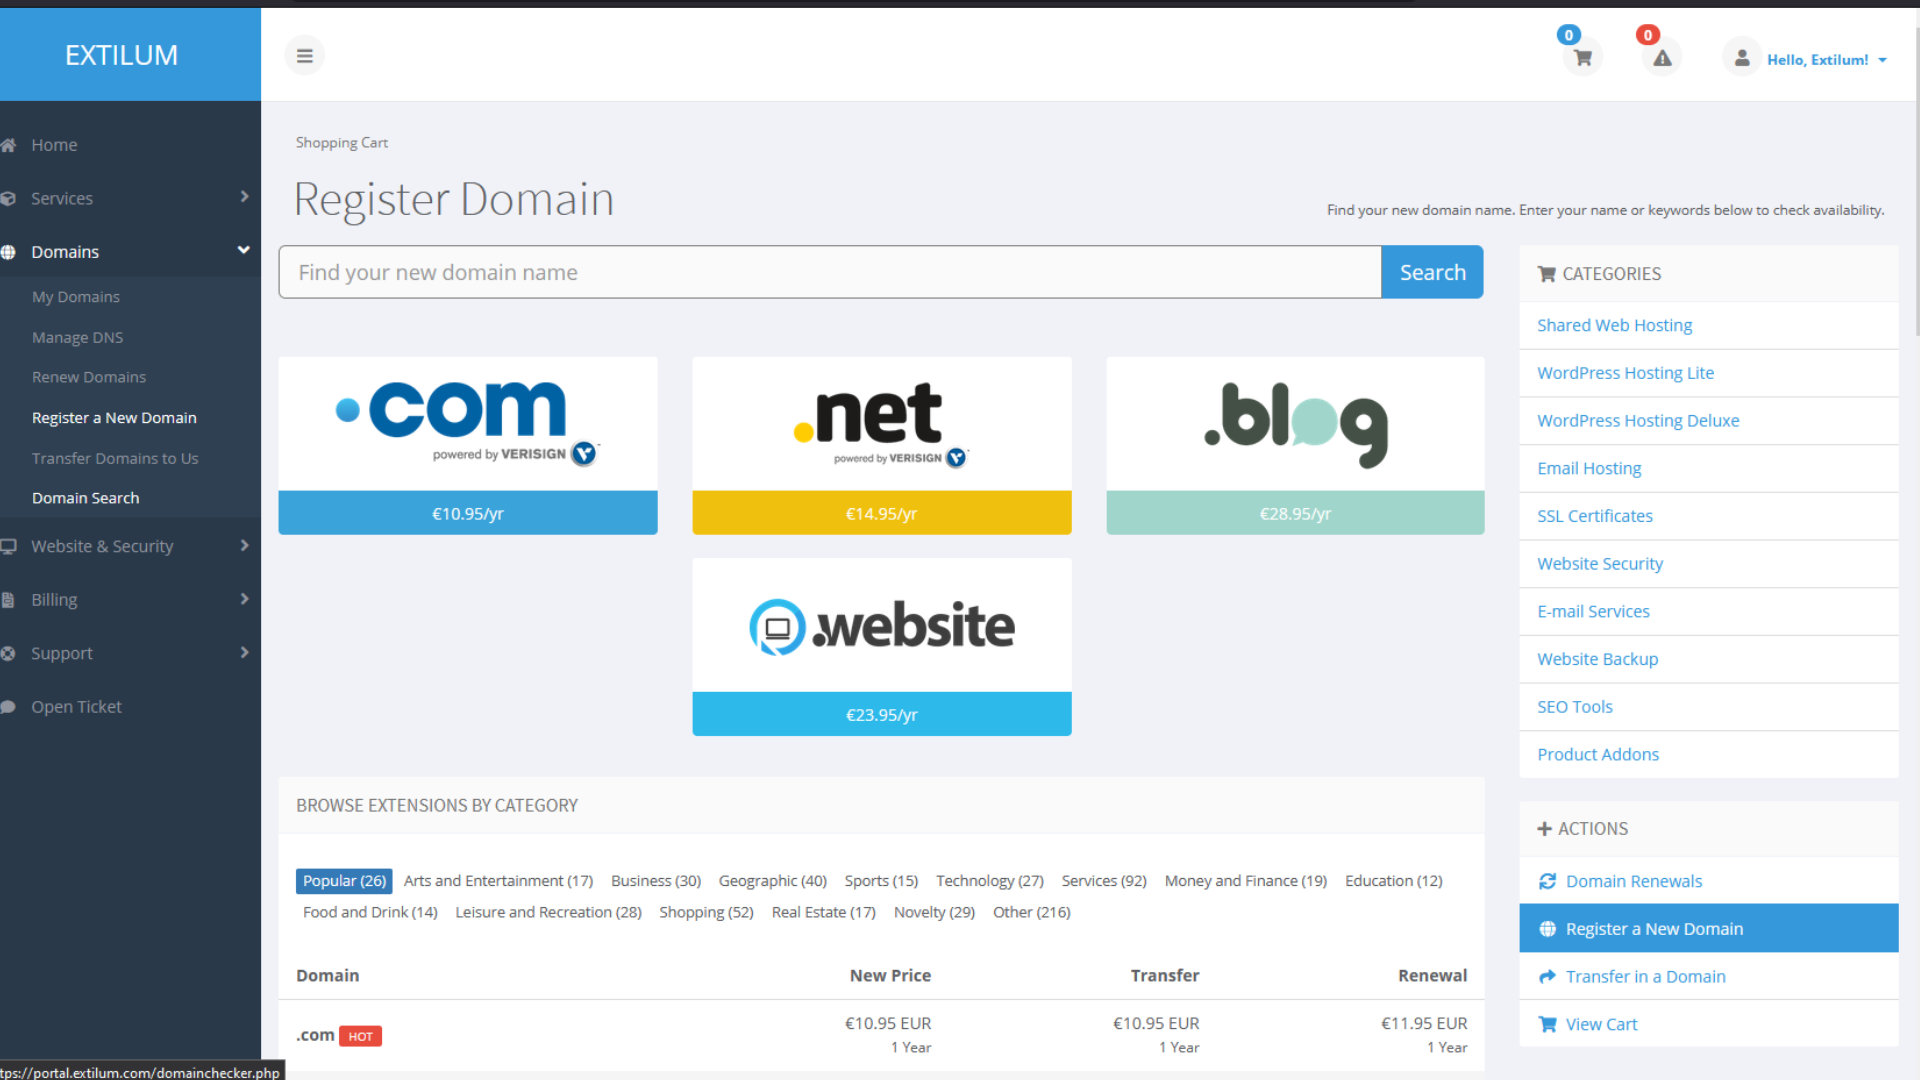 Extilum Client Area - Search Domain